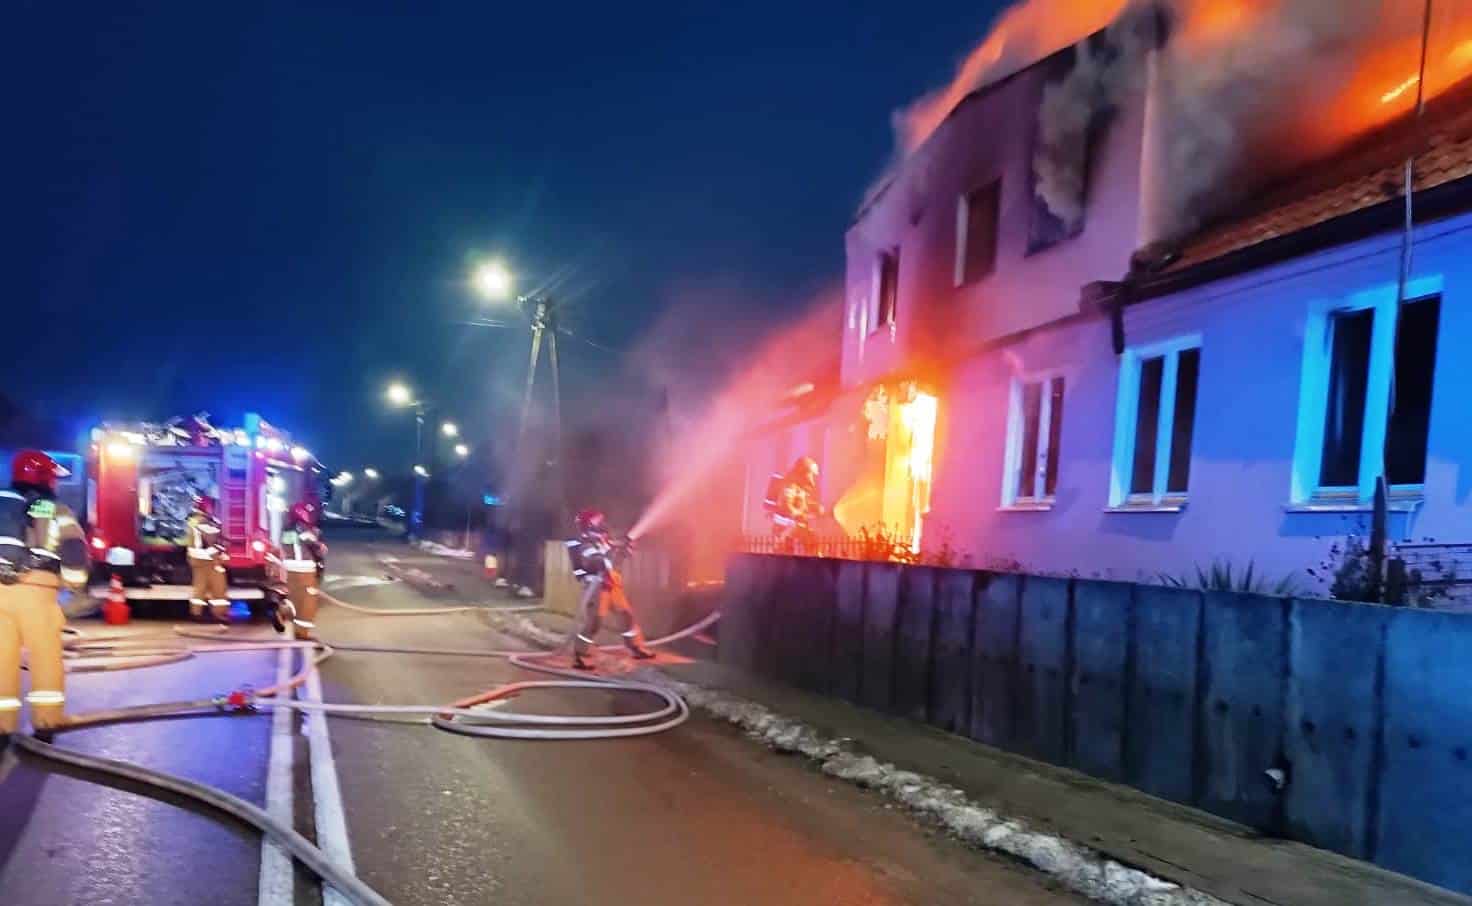 Gdyby nie odwaga strażaków, doszłoby do ogromnej eksplozji pożar Galerie, Olsztyn